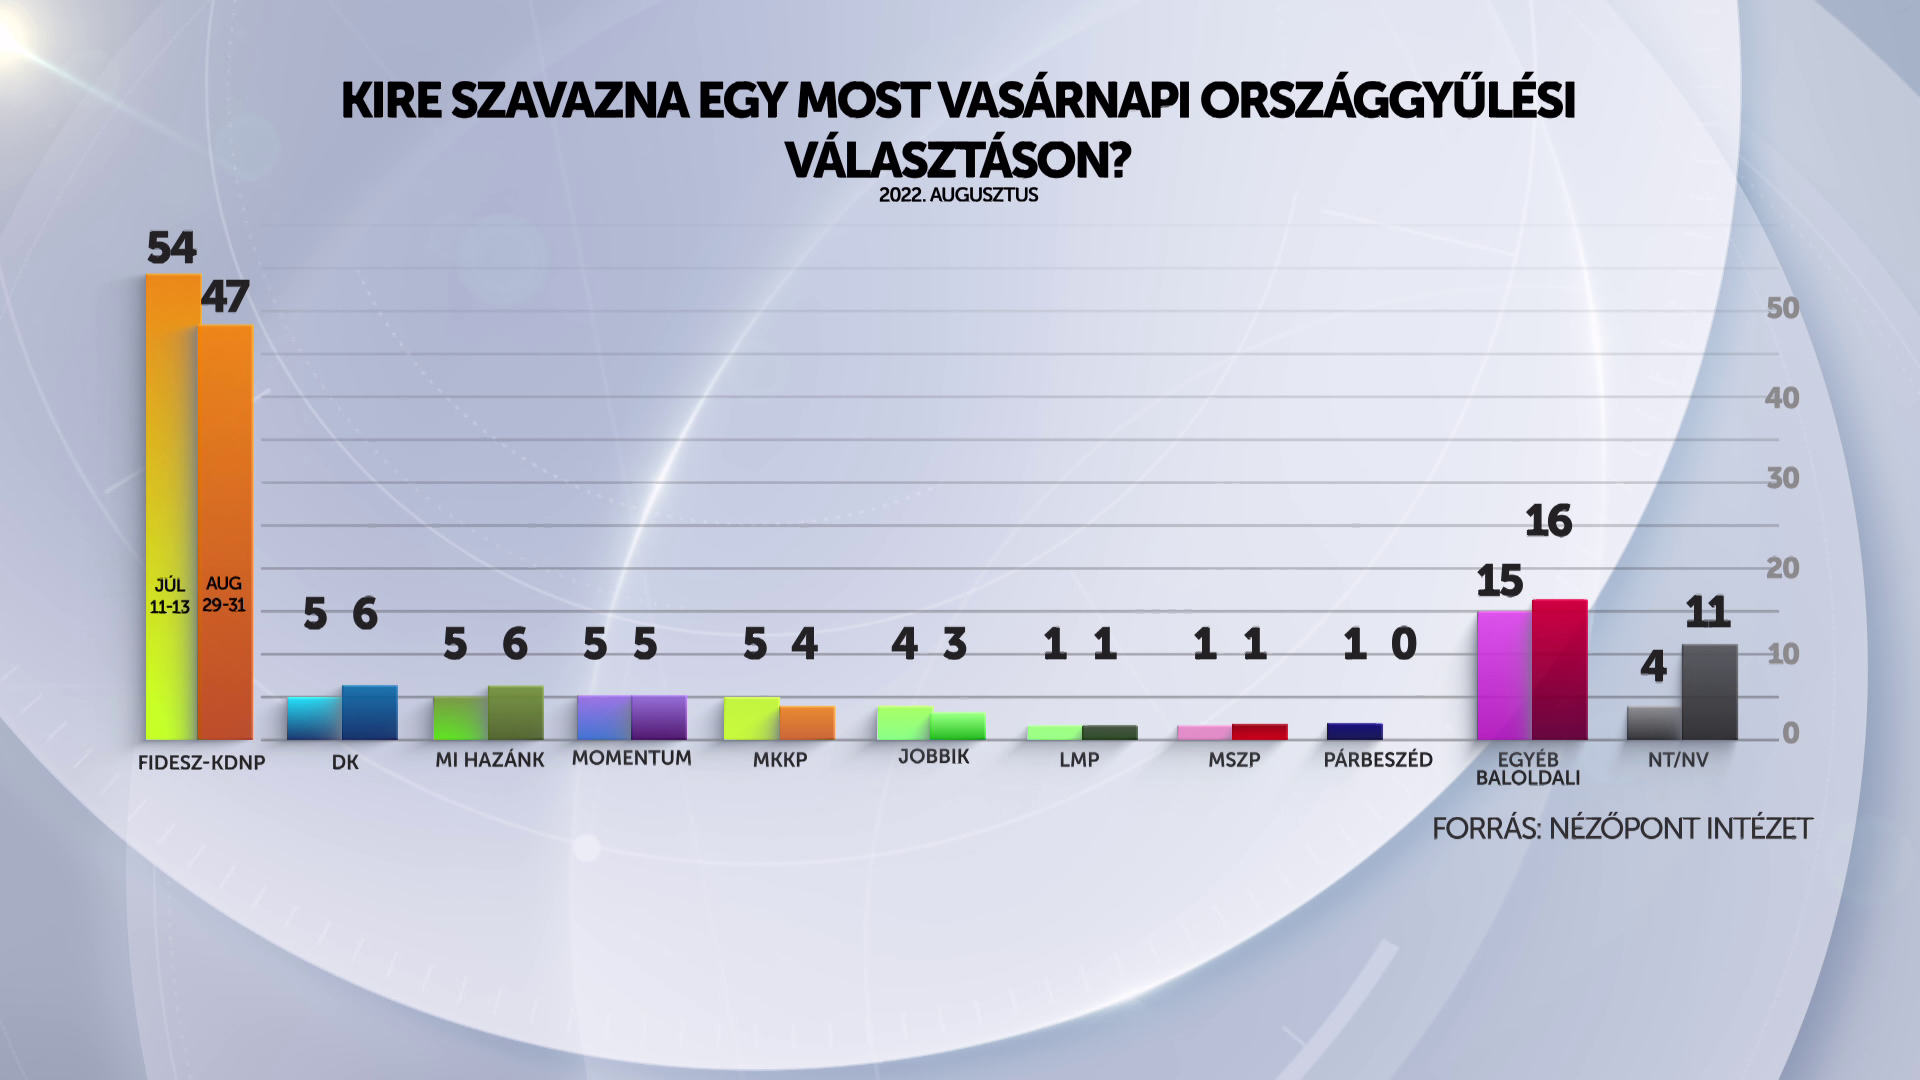 Ha most vasárnap tartanának a választásokat, jelnetős előnnyel nyerne a Fidesz 